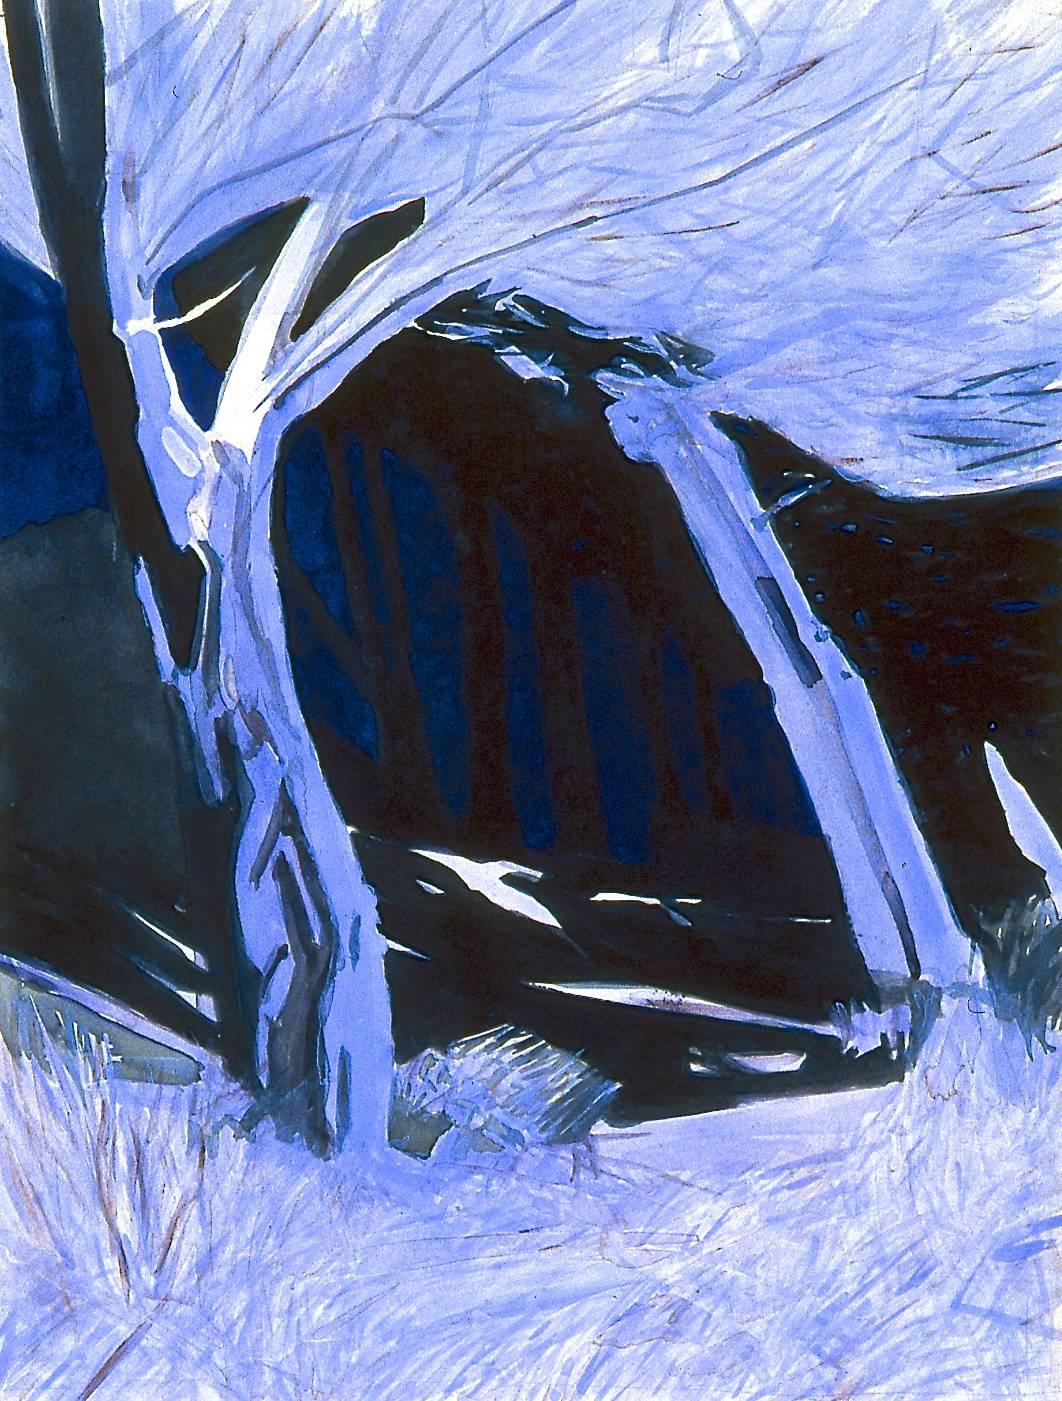 Abstract Drawing William Stanisich - Lands End 2005 n° 4 / aquarelle bleue, magnifiquement encadrée